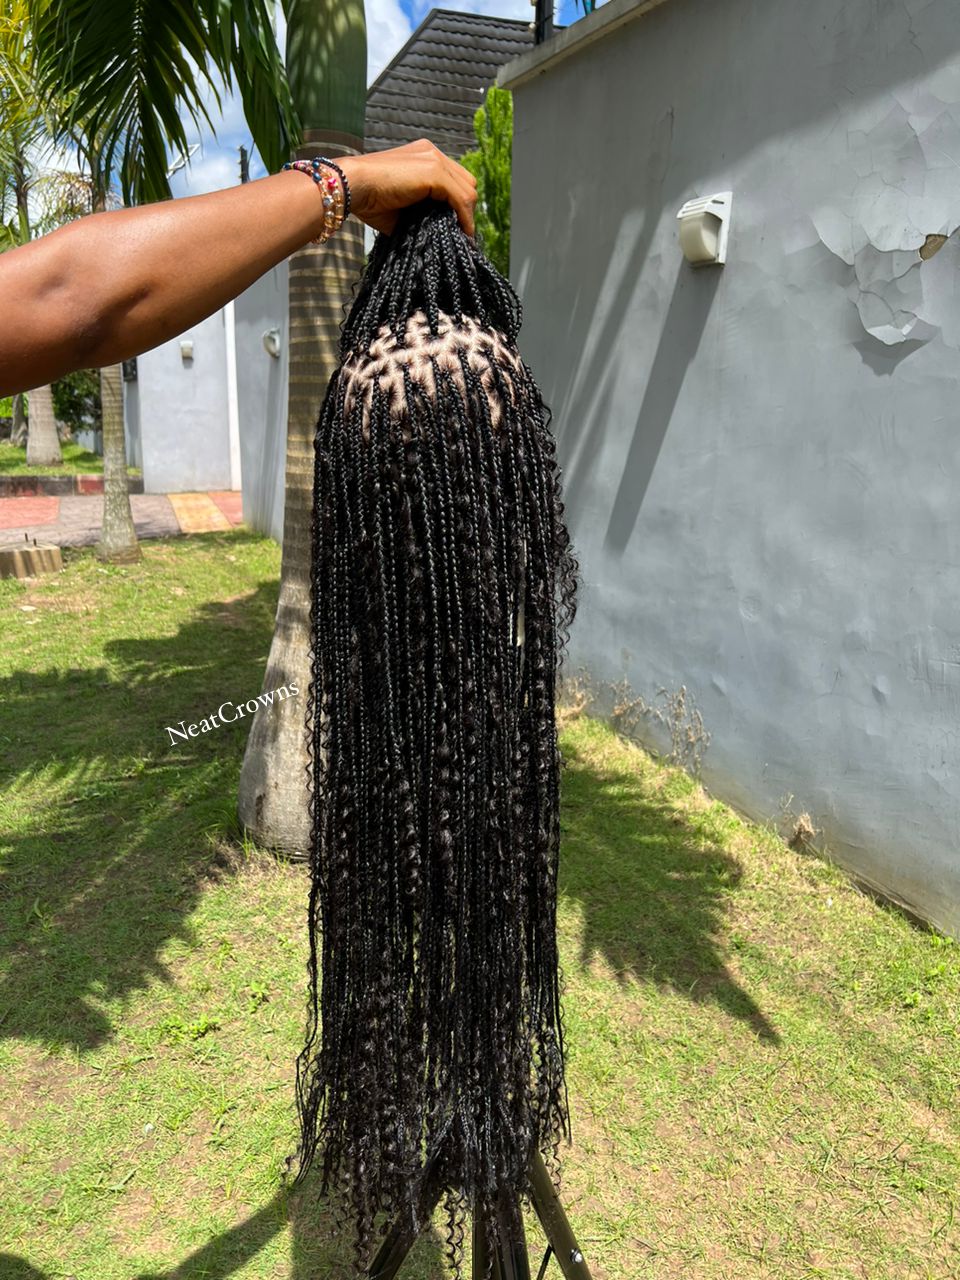 Bohemian braids with 100% human hair curls